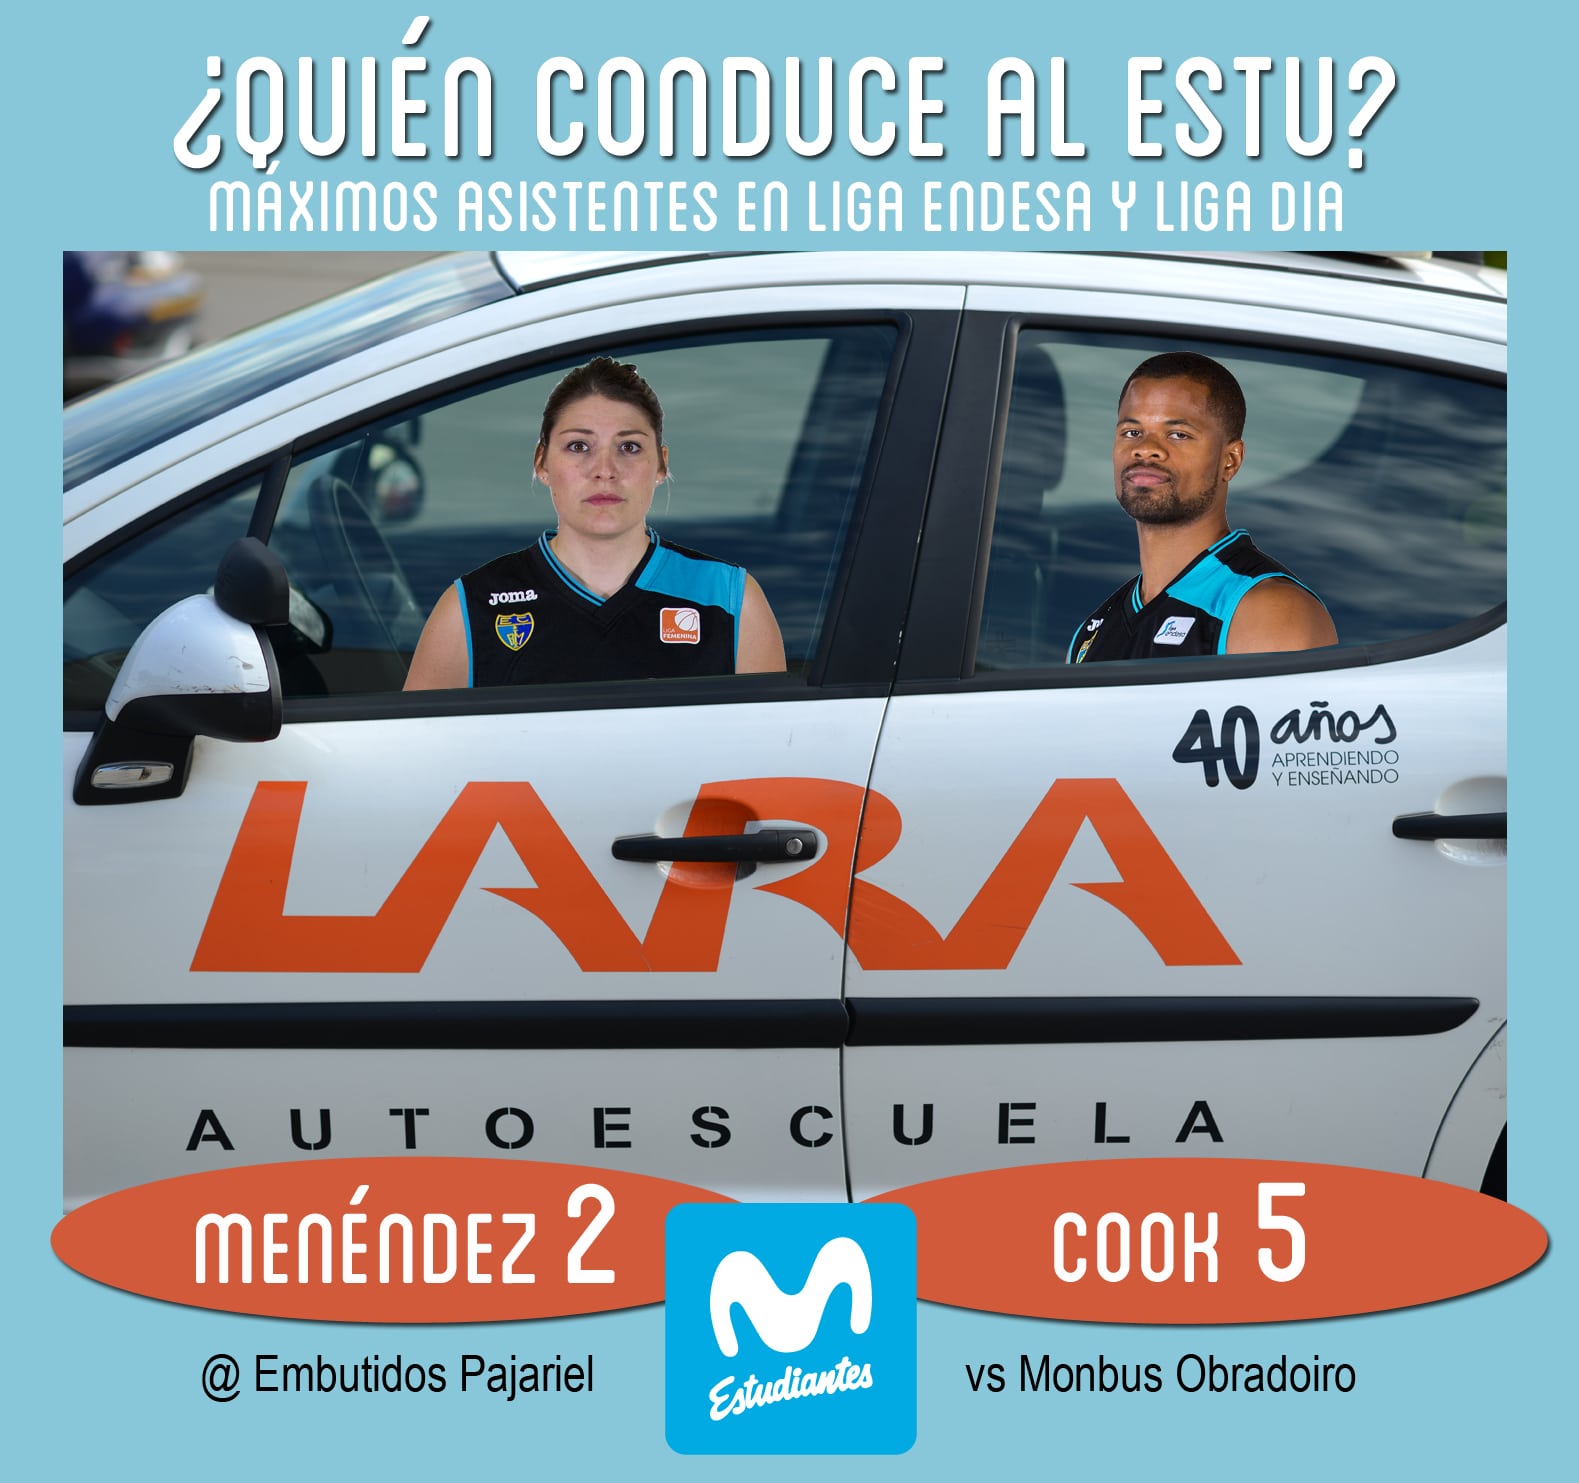 Conductores Autoescuela Lara: Omar Cook y Celia Menéndez